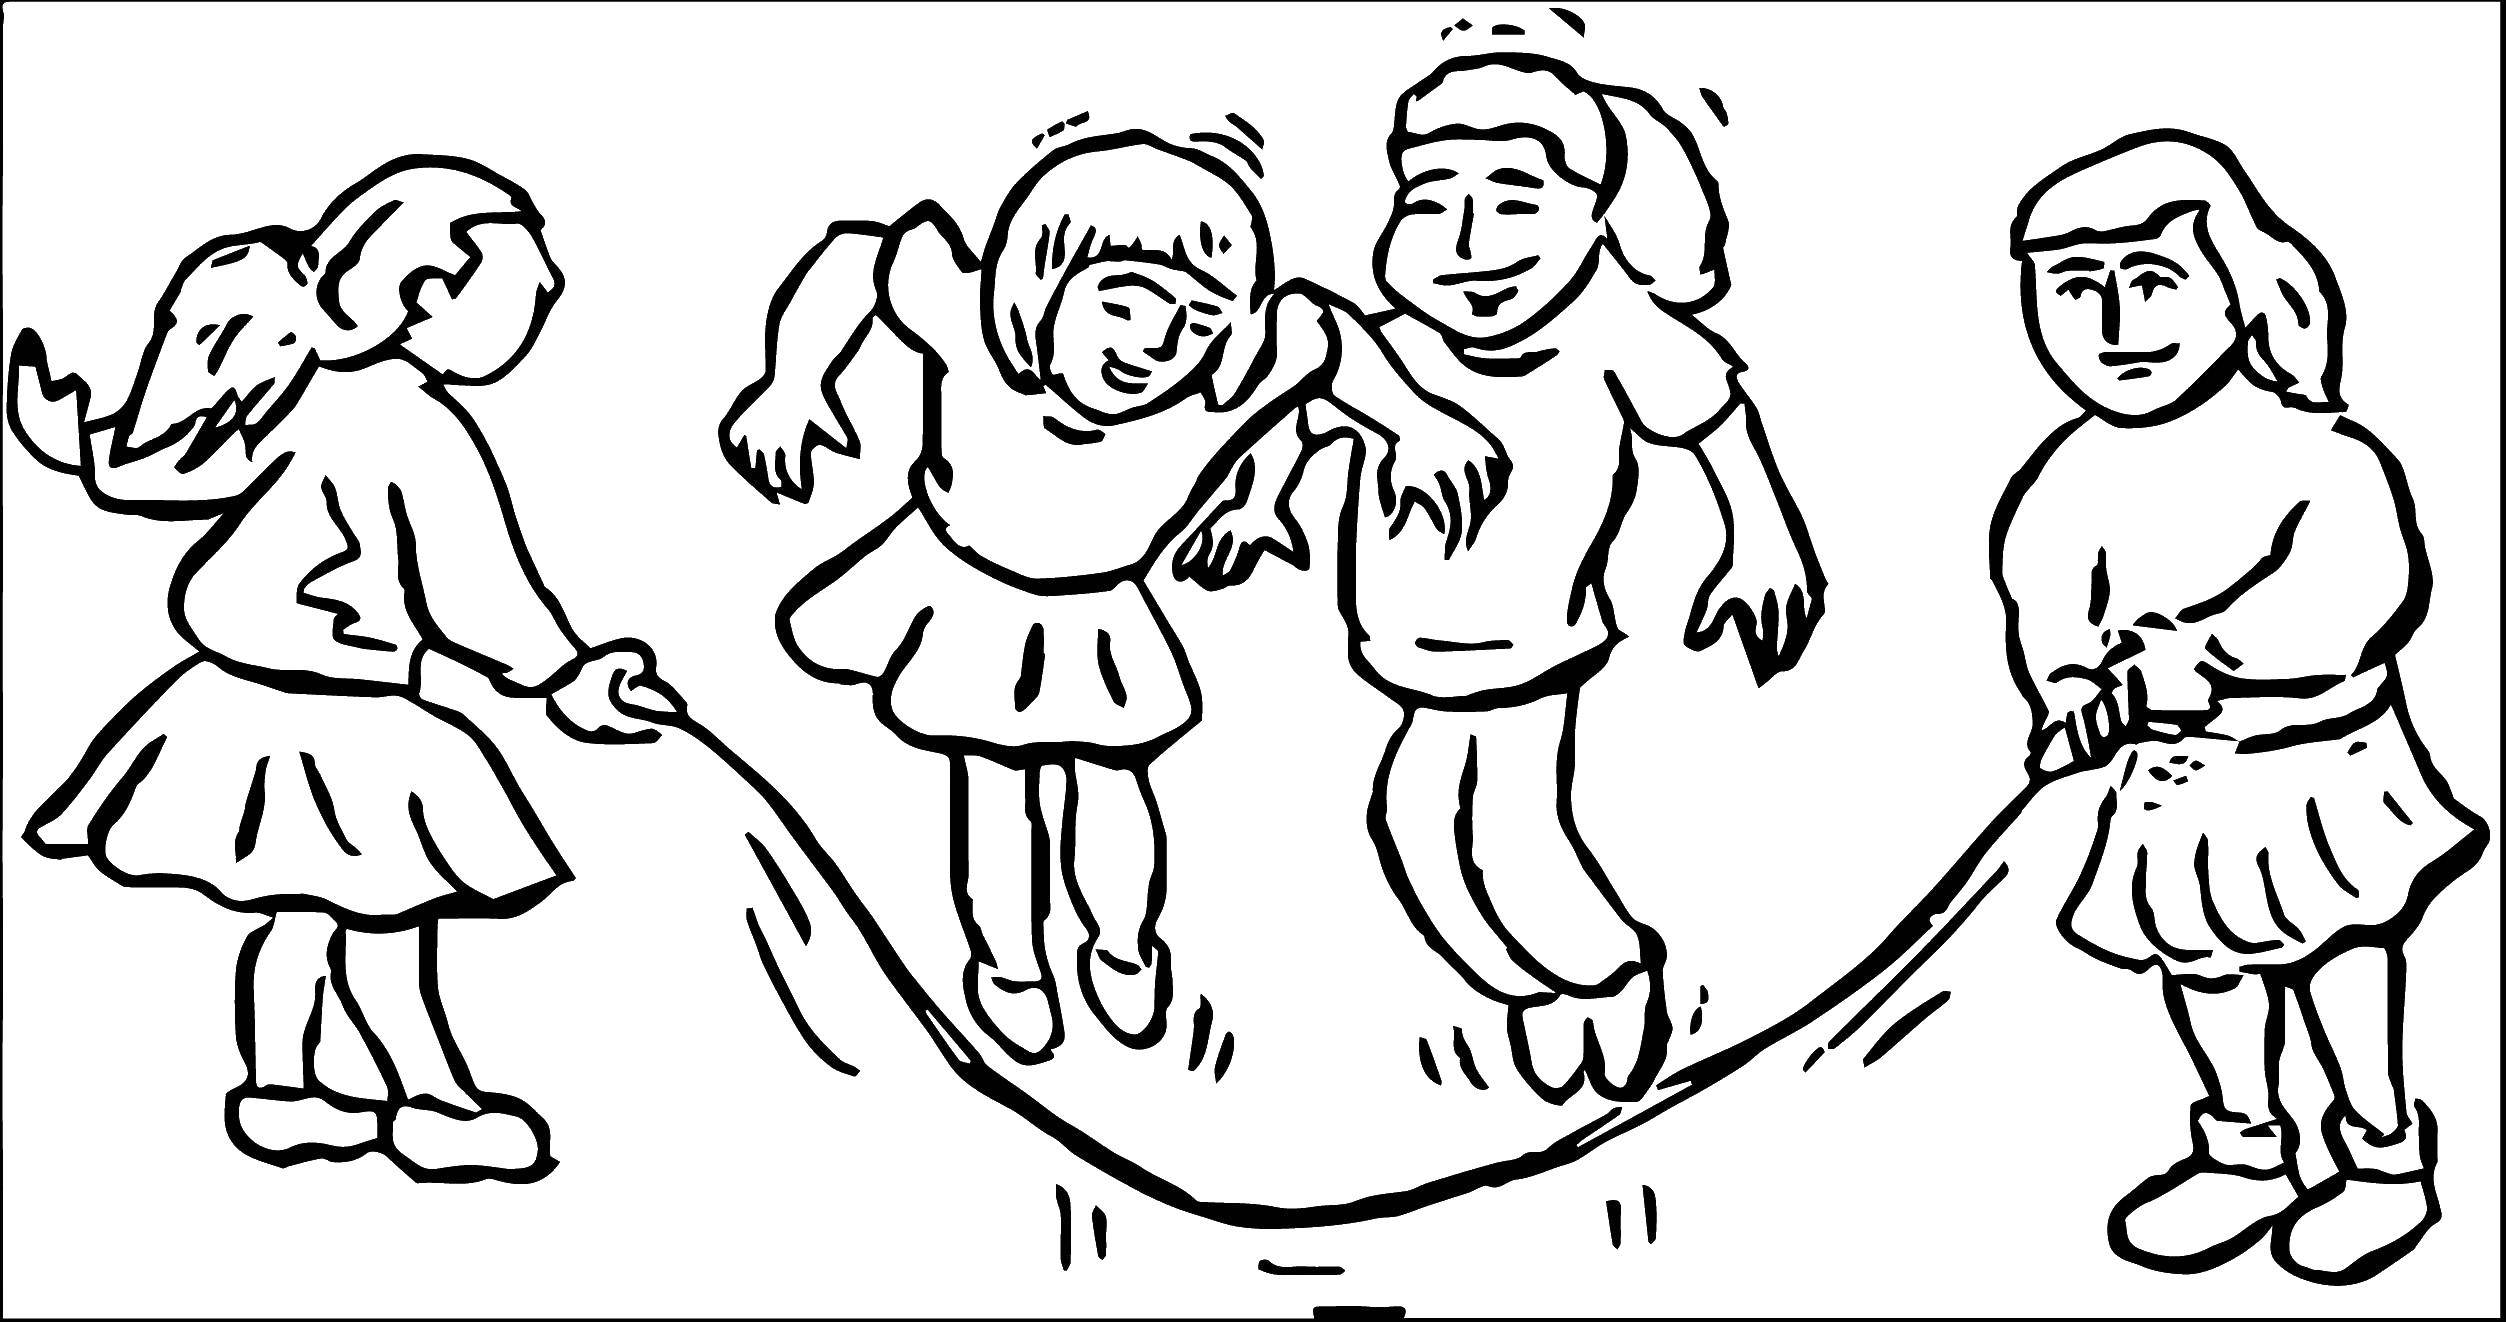 Название: Раскраска Дети прыгают через скакалку. Категория: Дети играют. Теги: скакалка, мальчик, девочка.